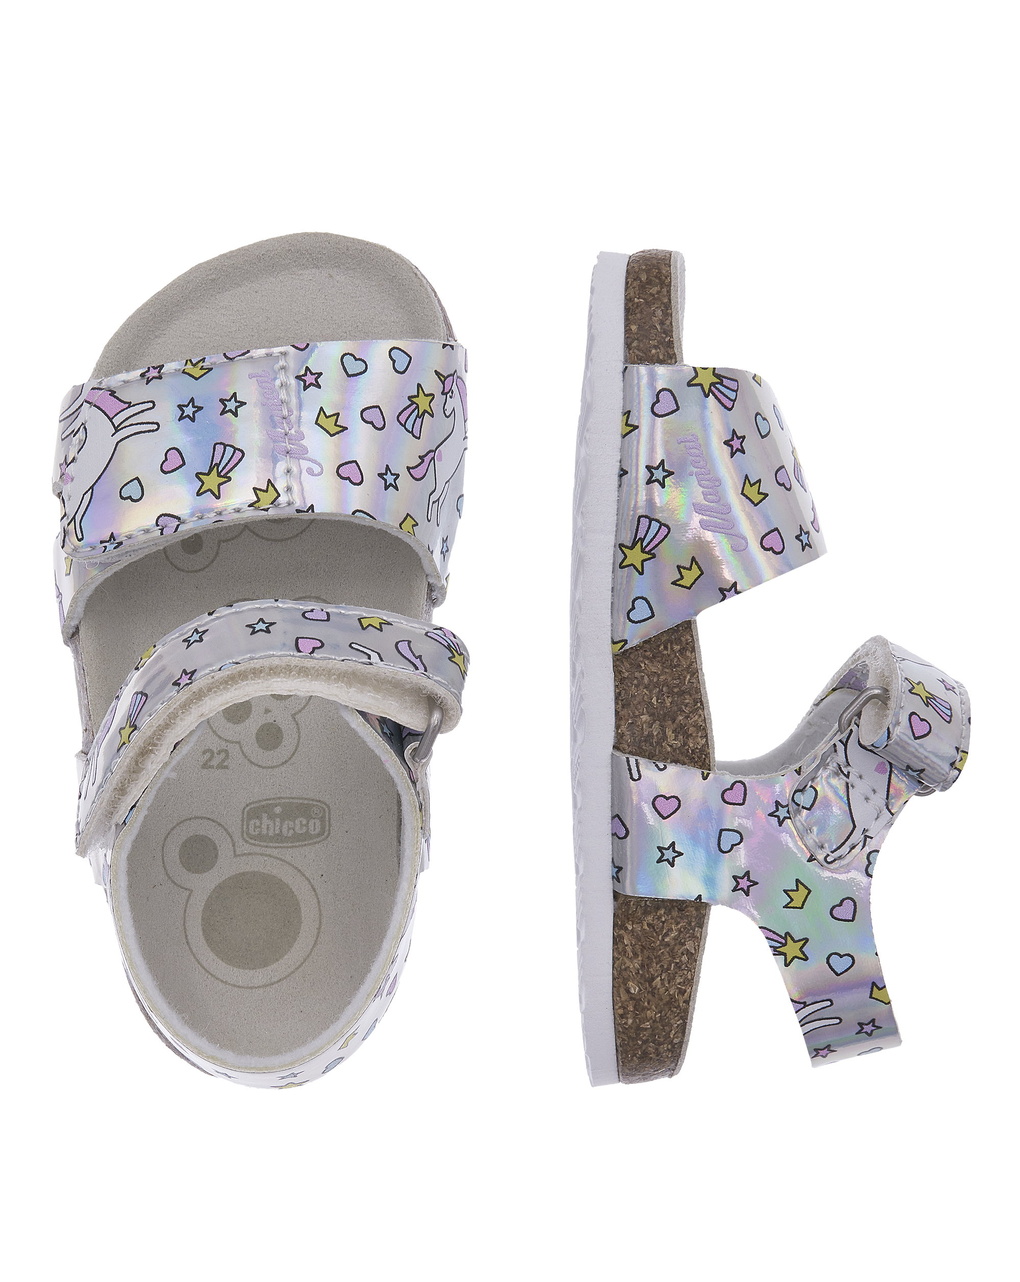 Sandalo fleurette per bambine - Chicco